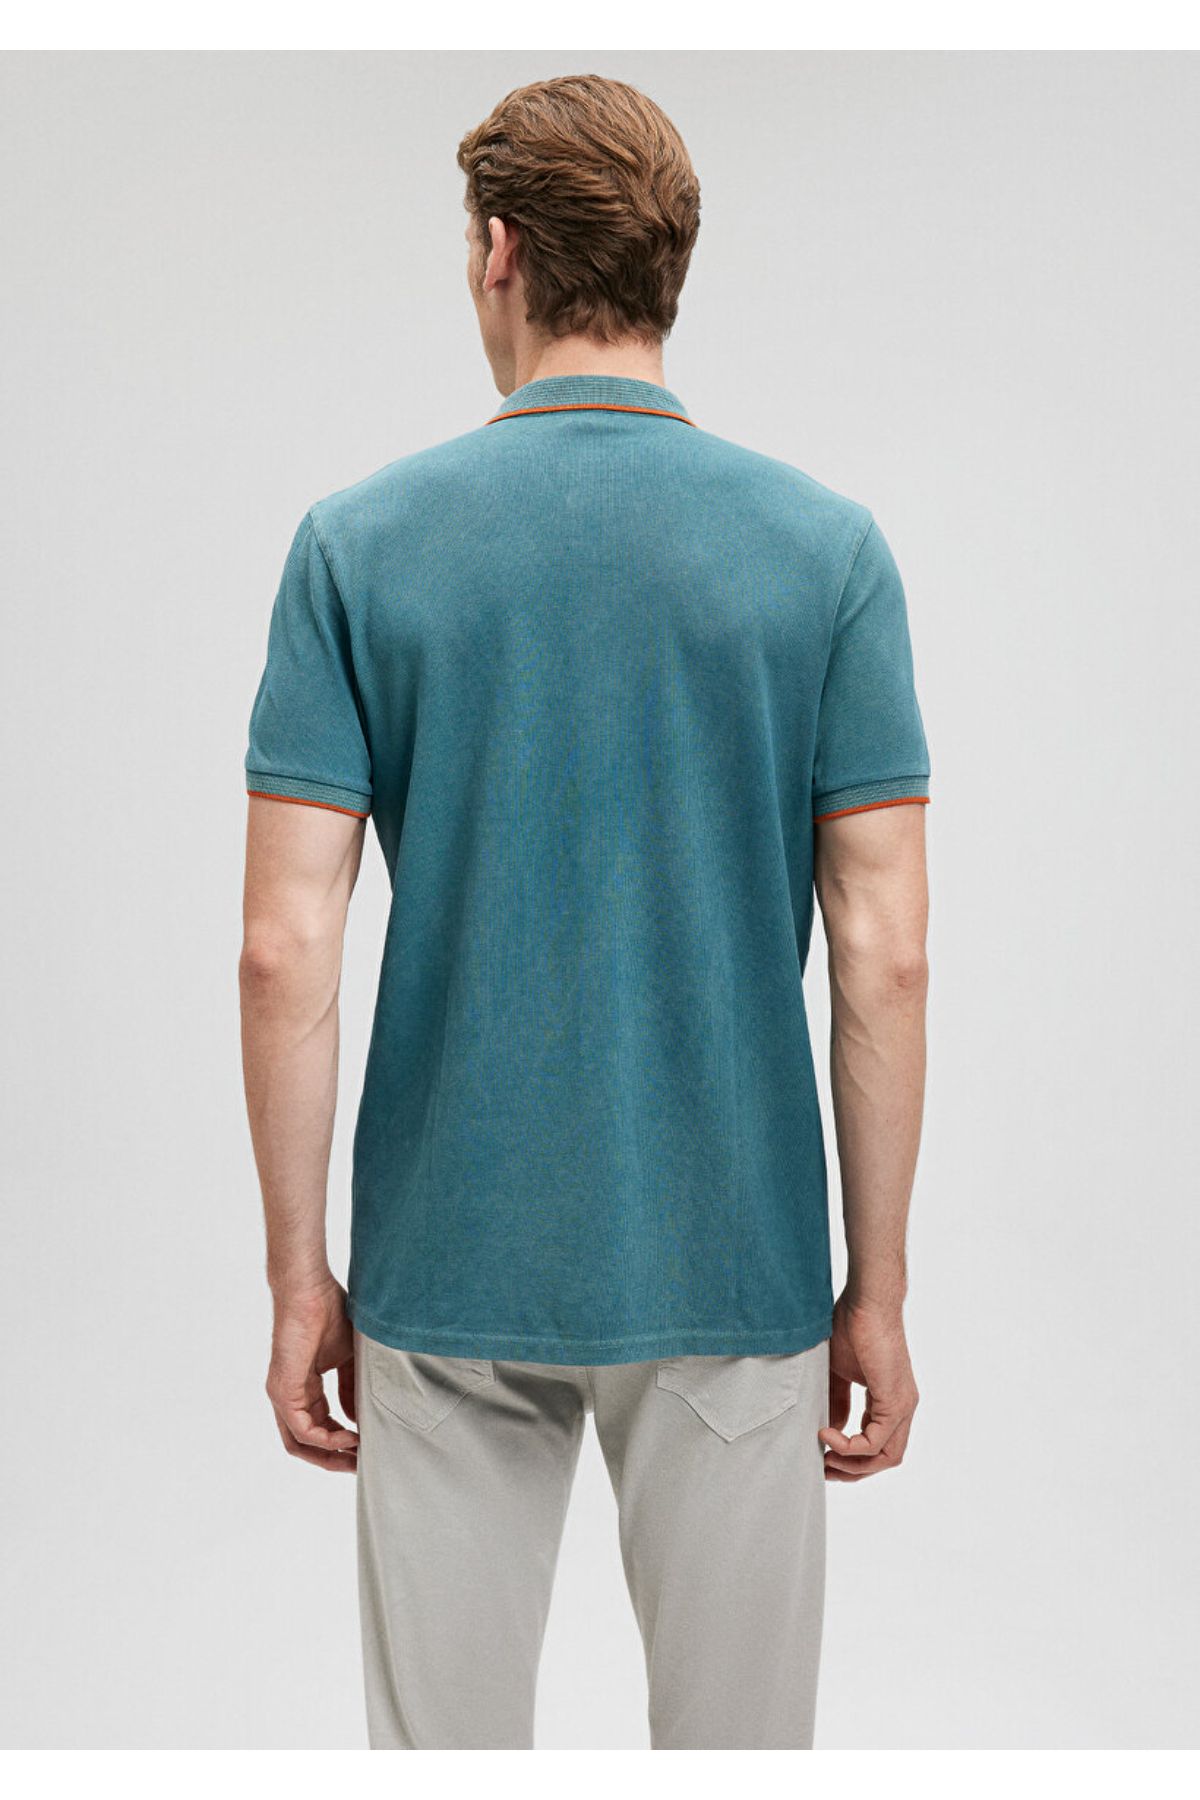 Mavi شرت سبز مردانه M065920-30708